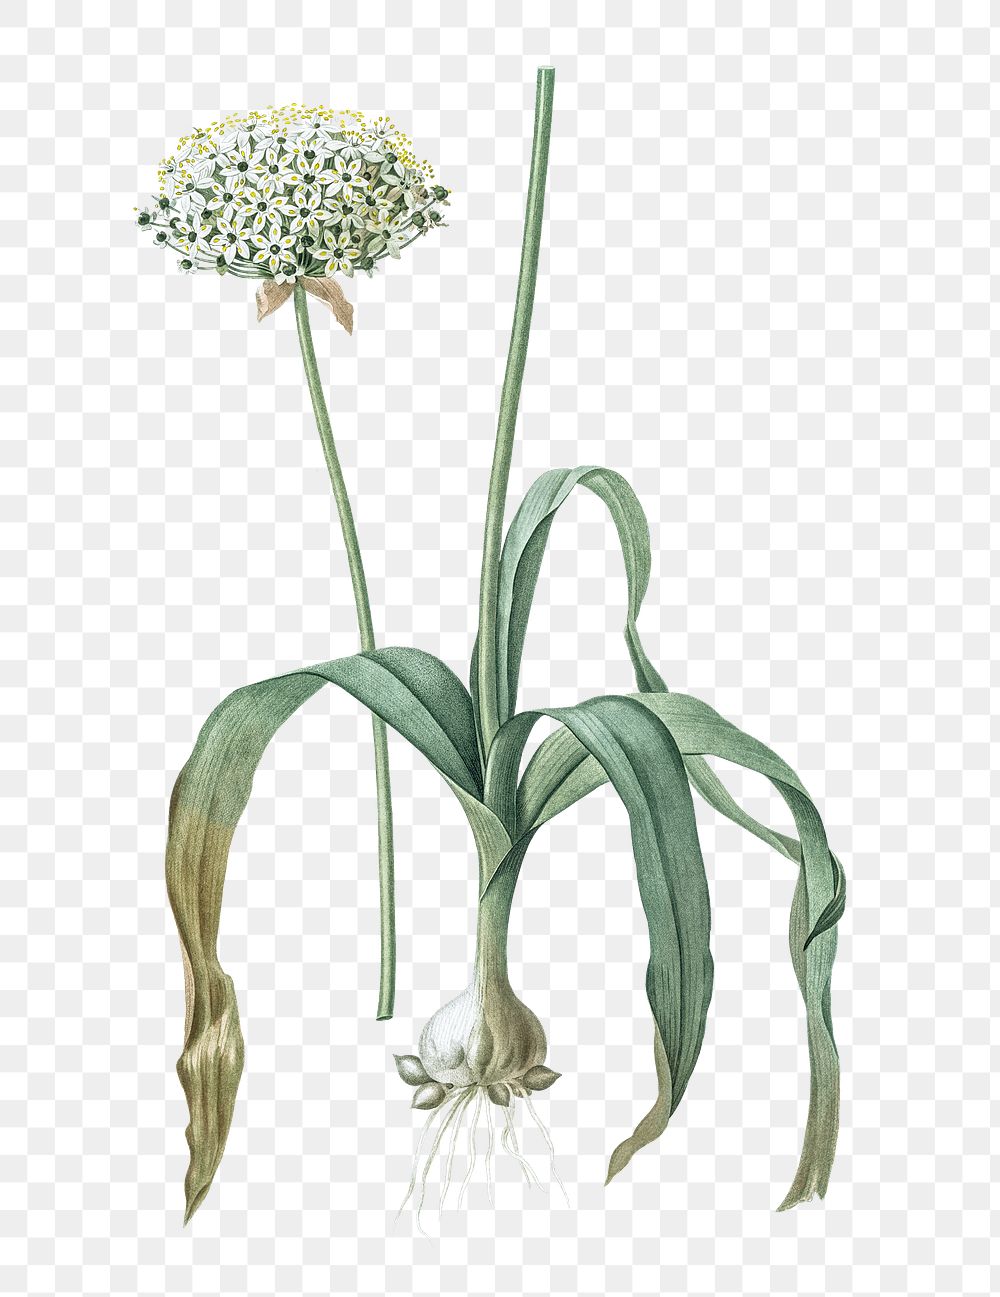 Black garlic png sticker, vintage botanical illustration, transparent background